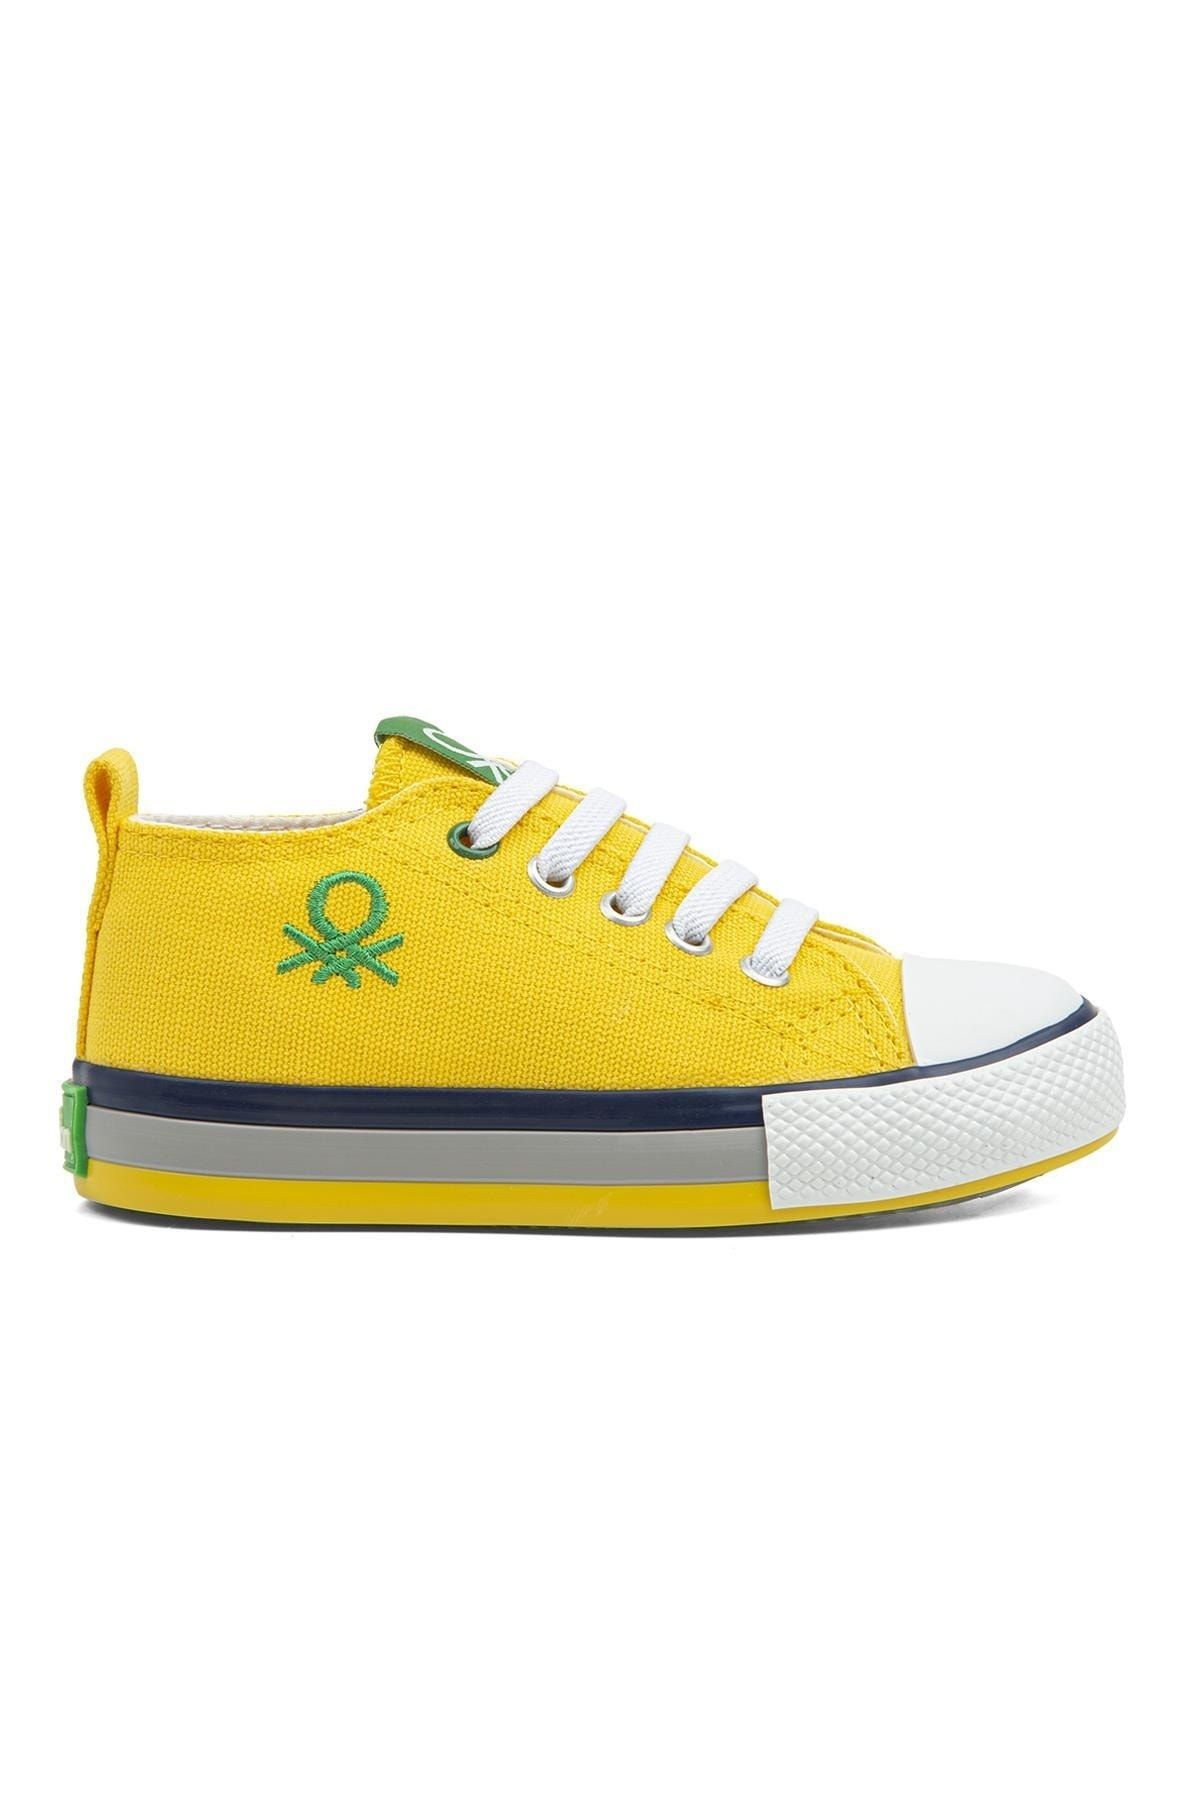 Benetton ® | Bn-30653 - 3394 Sarı - Çocuk Spor Ayakkabı